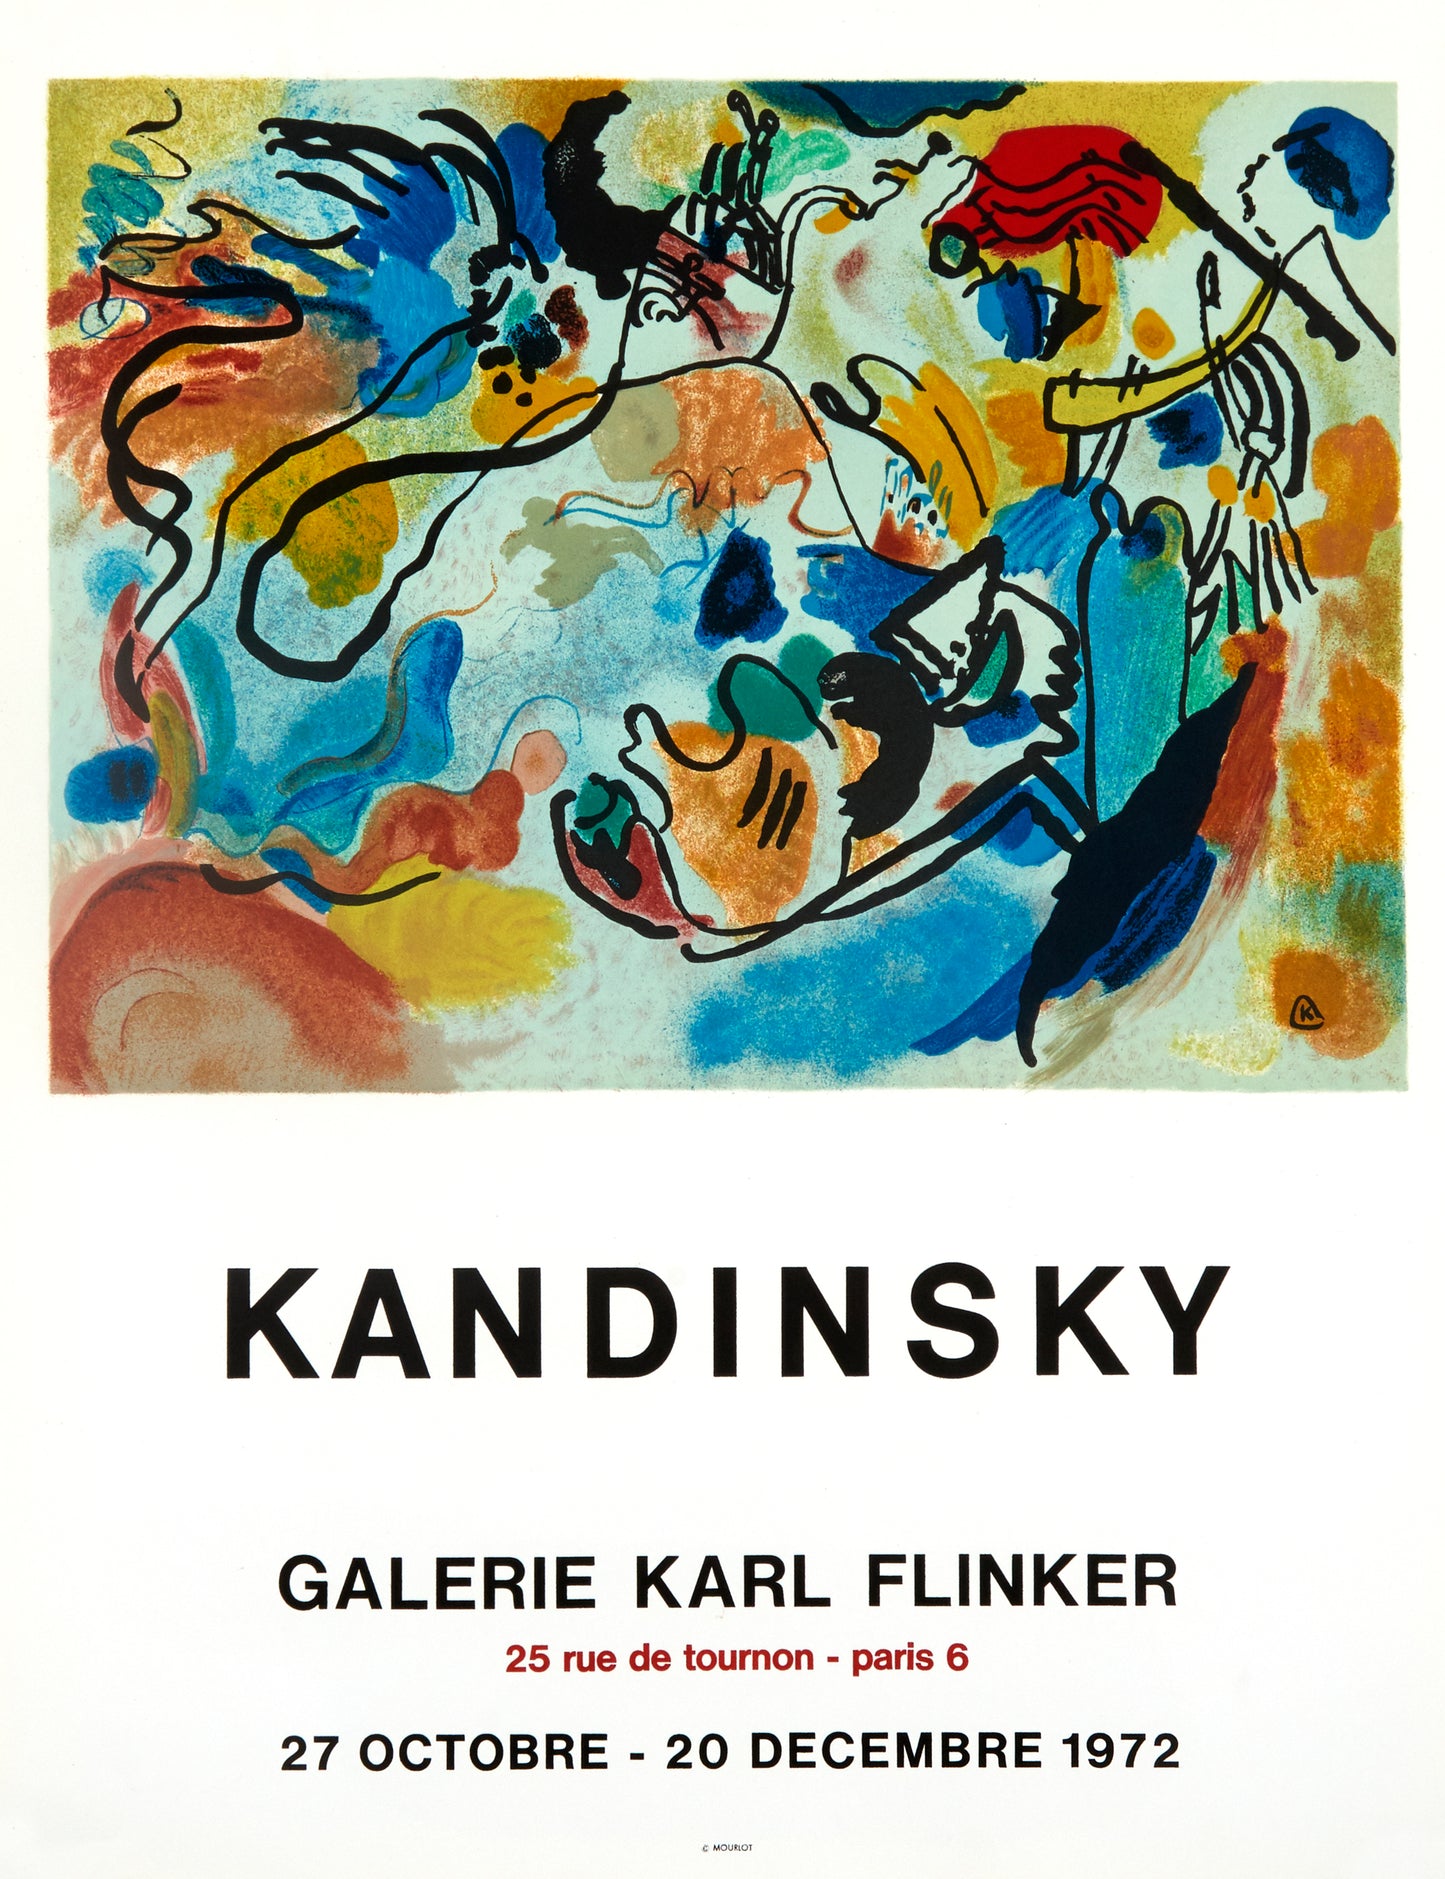 Kandinsky - Galerie Karl Flinker (after) Wassily Kandinsky, 1972 - Mourlot Editions - Fine_Art - Poster - Lithograph - Wall Art - Vintage - Prints - Original